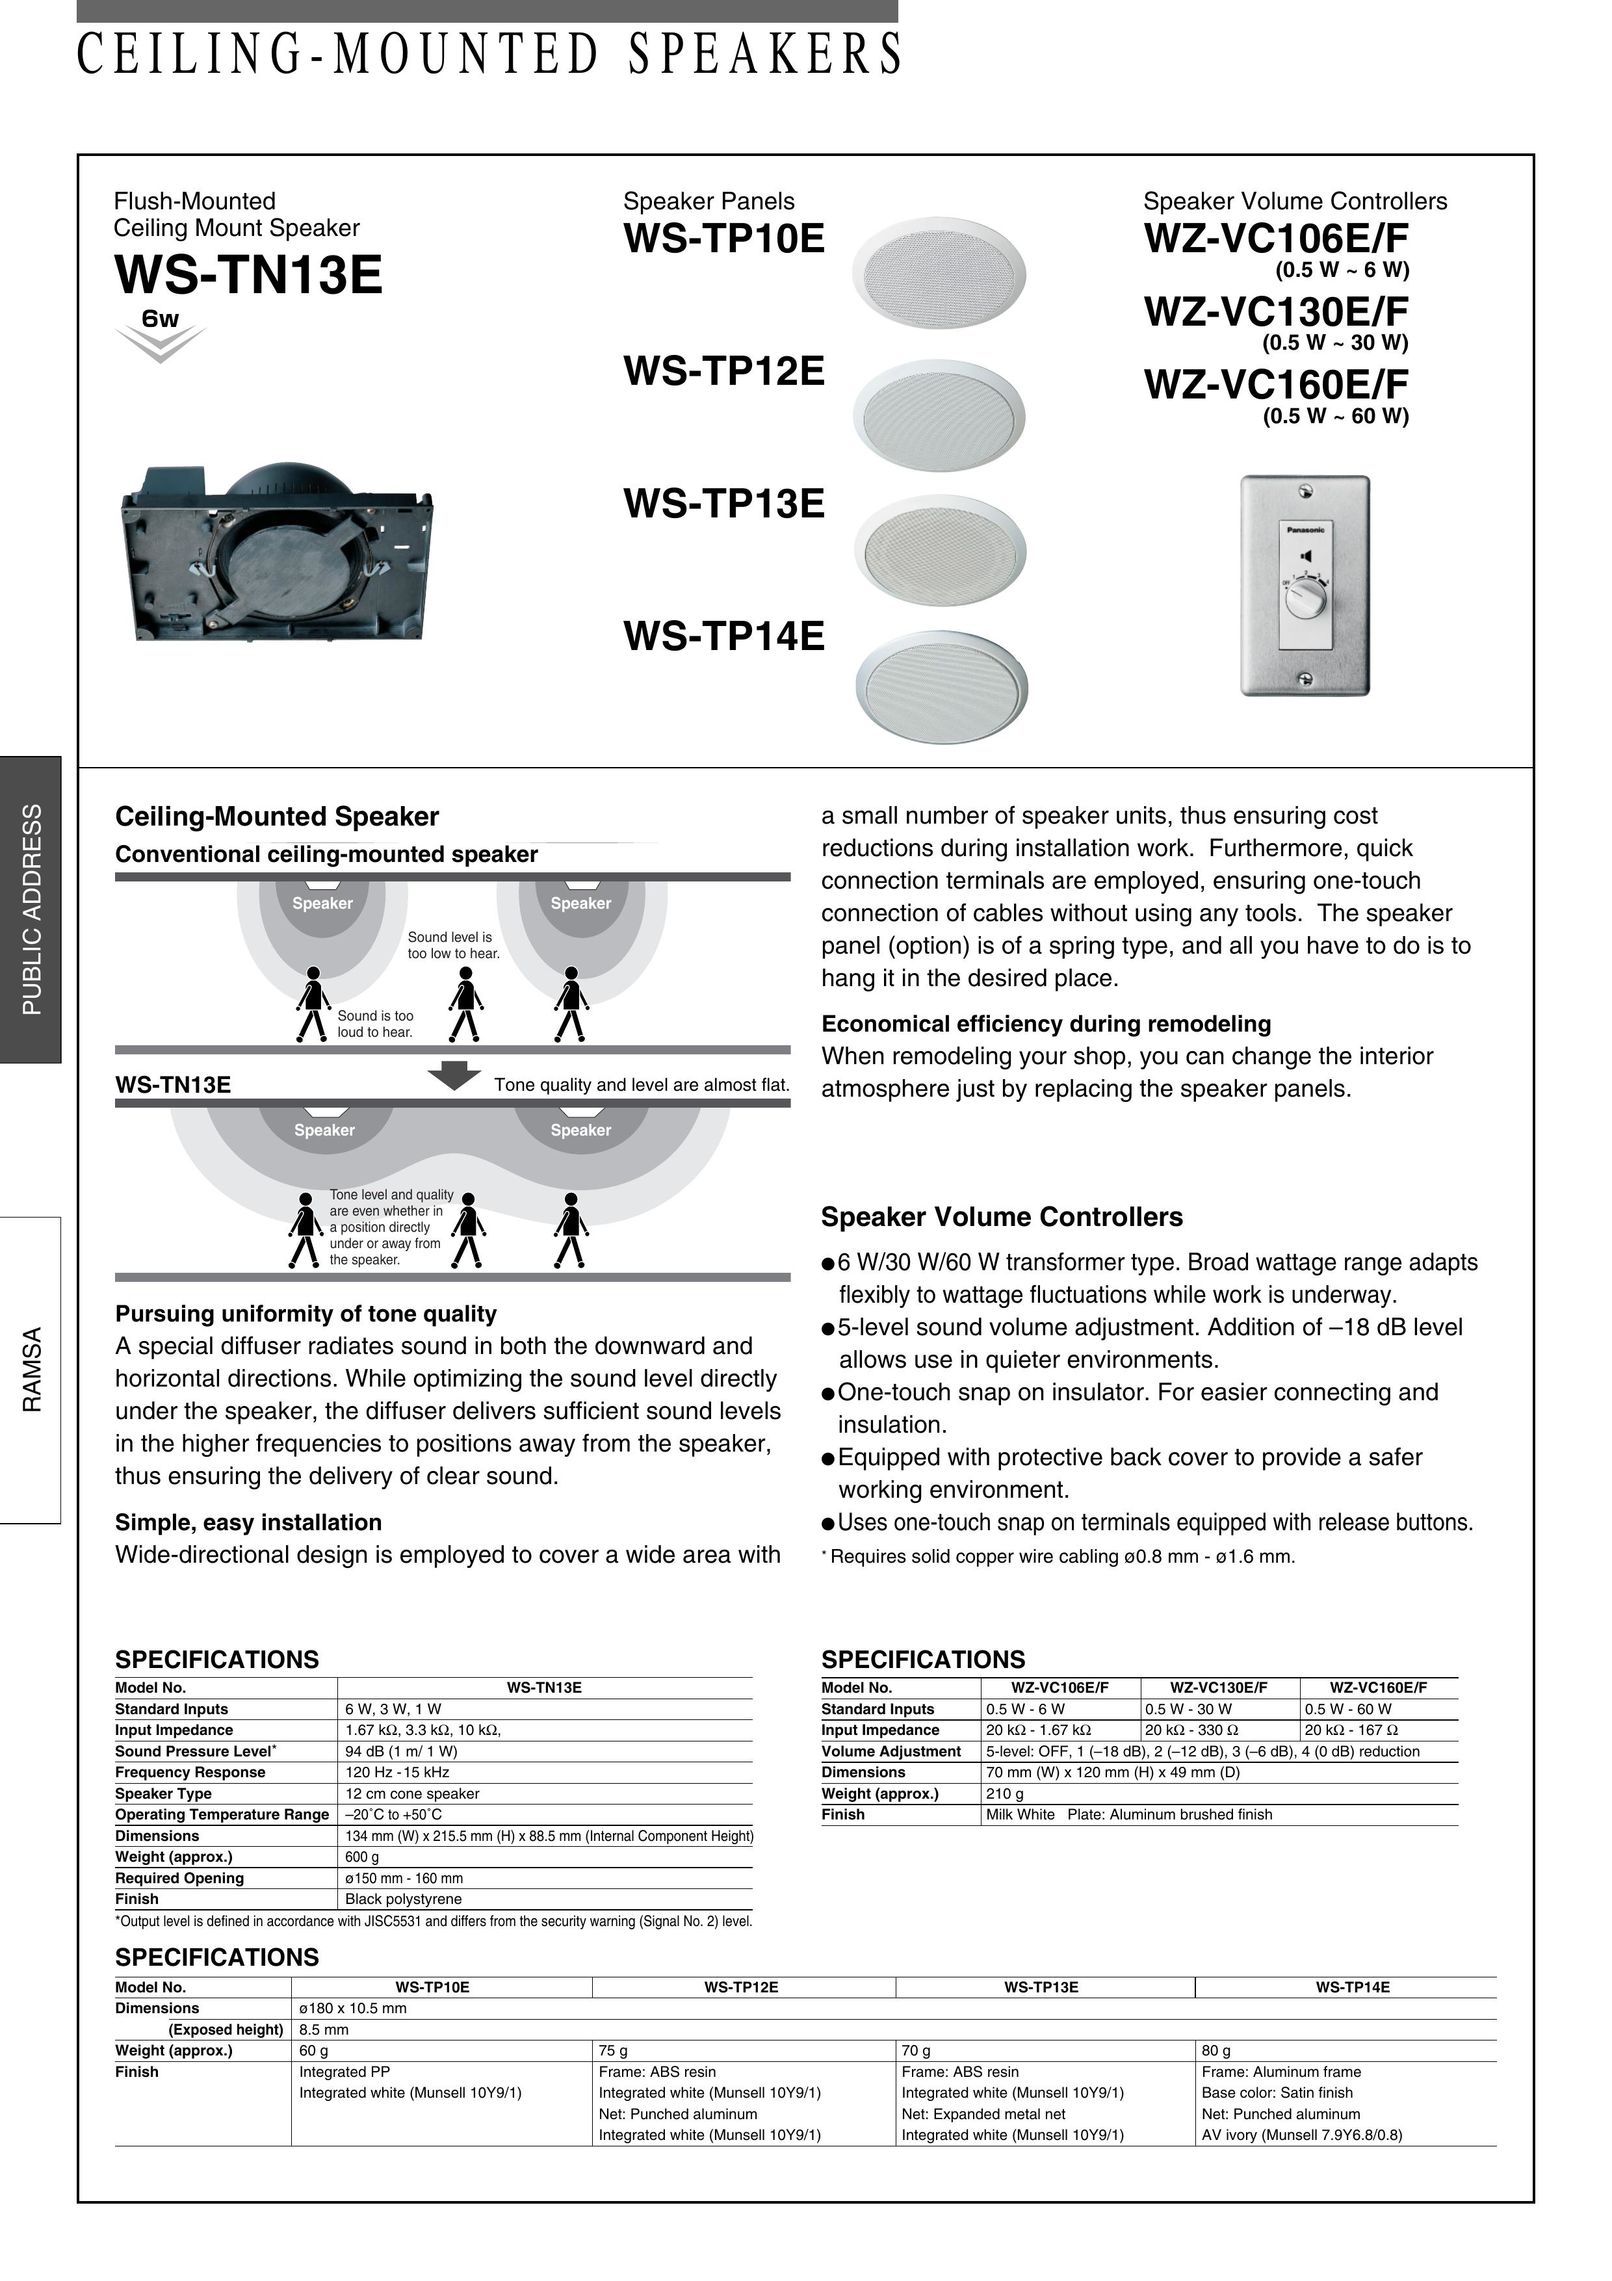 Panasonic WZ-VC160E/F Speaker User Manual